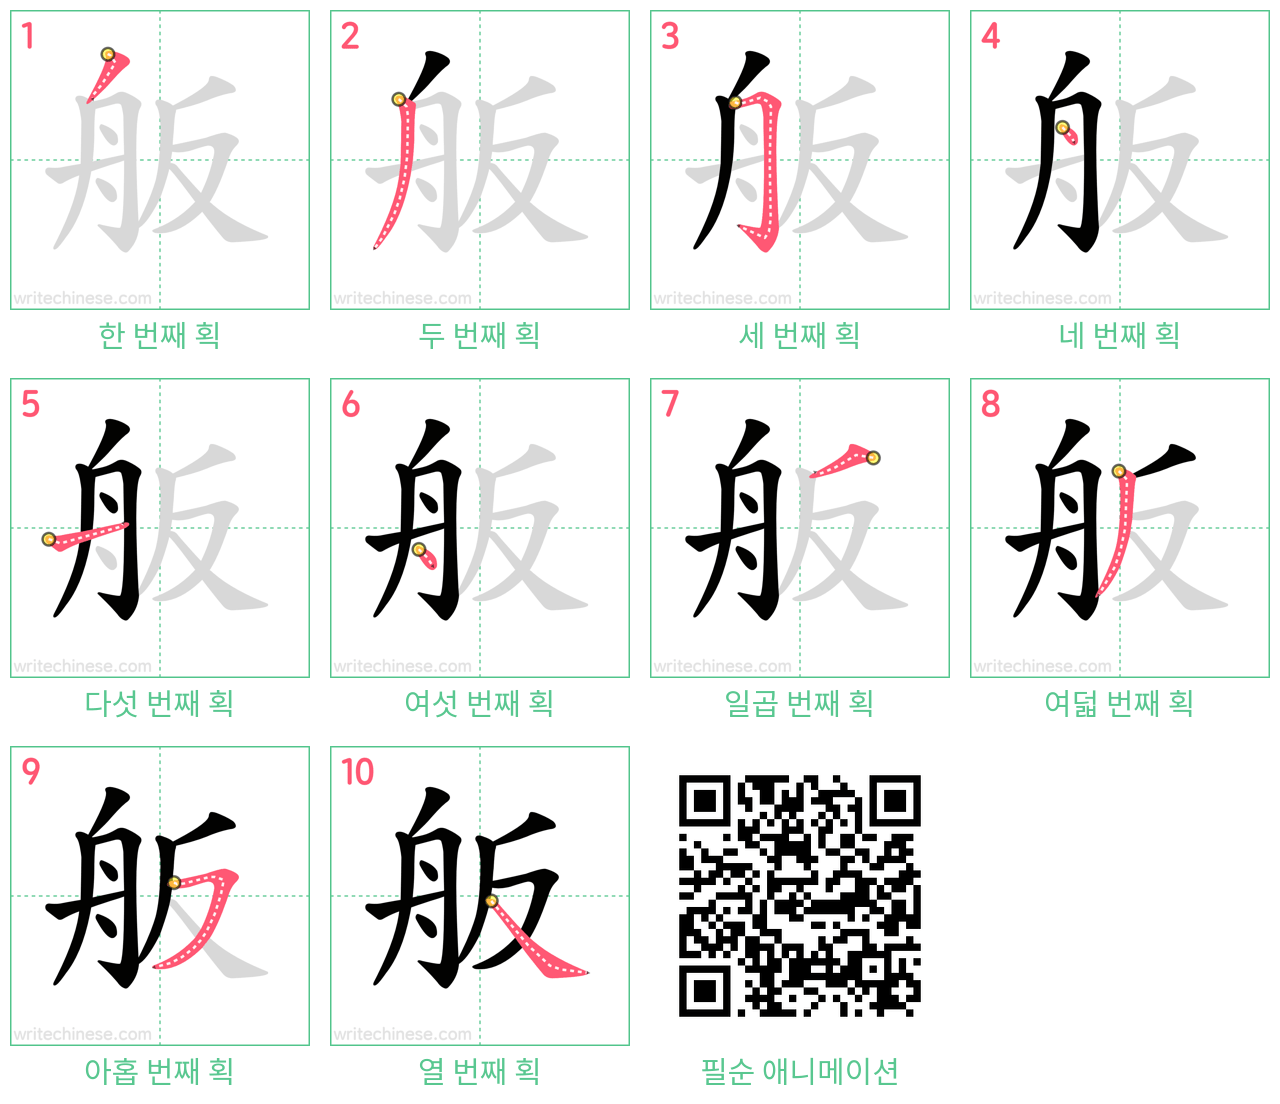 舨 step-by-step stroke order diagrams